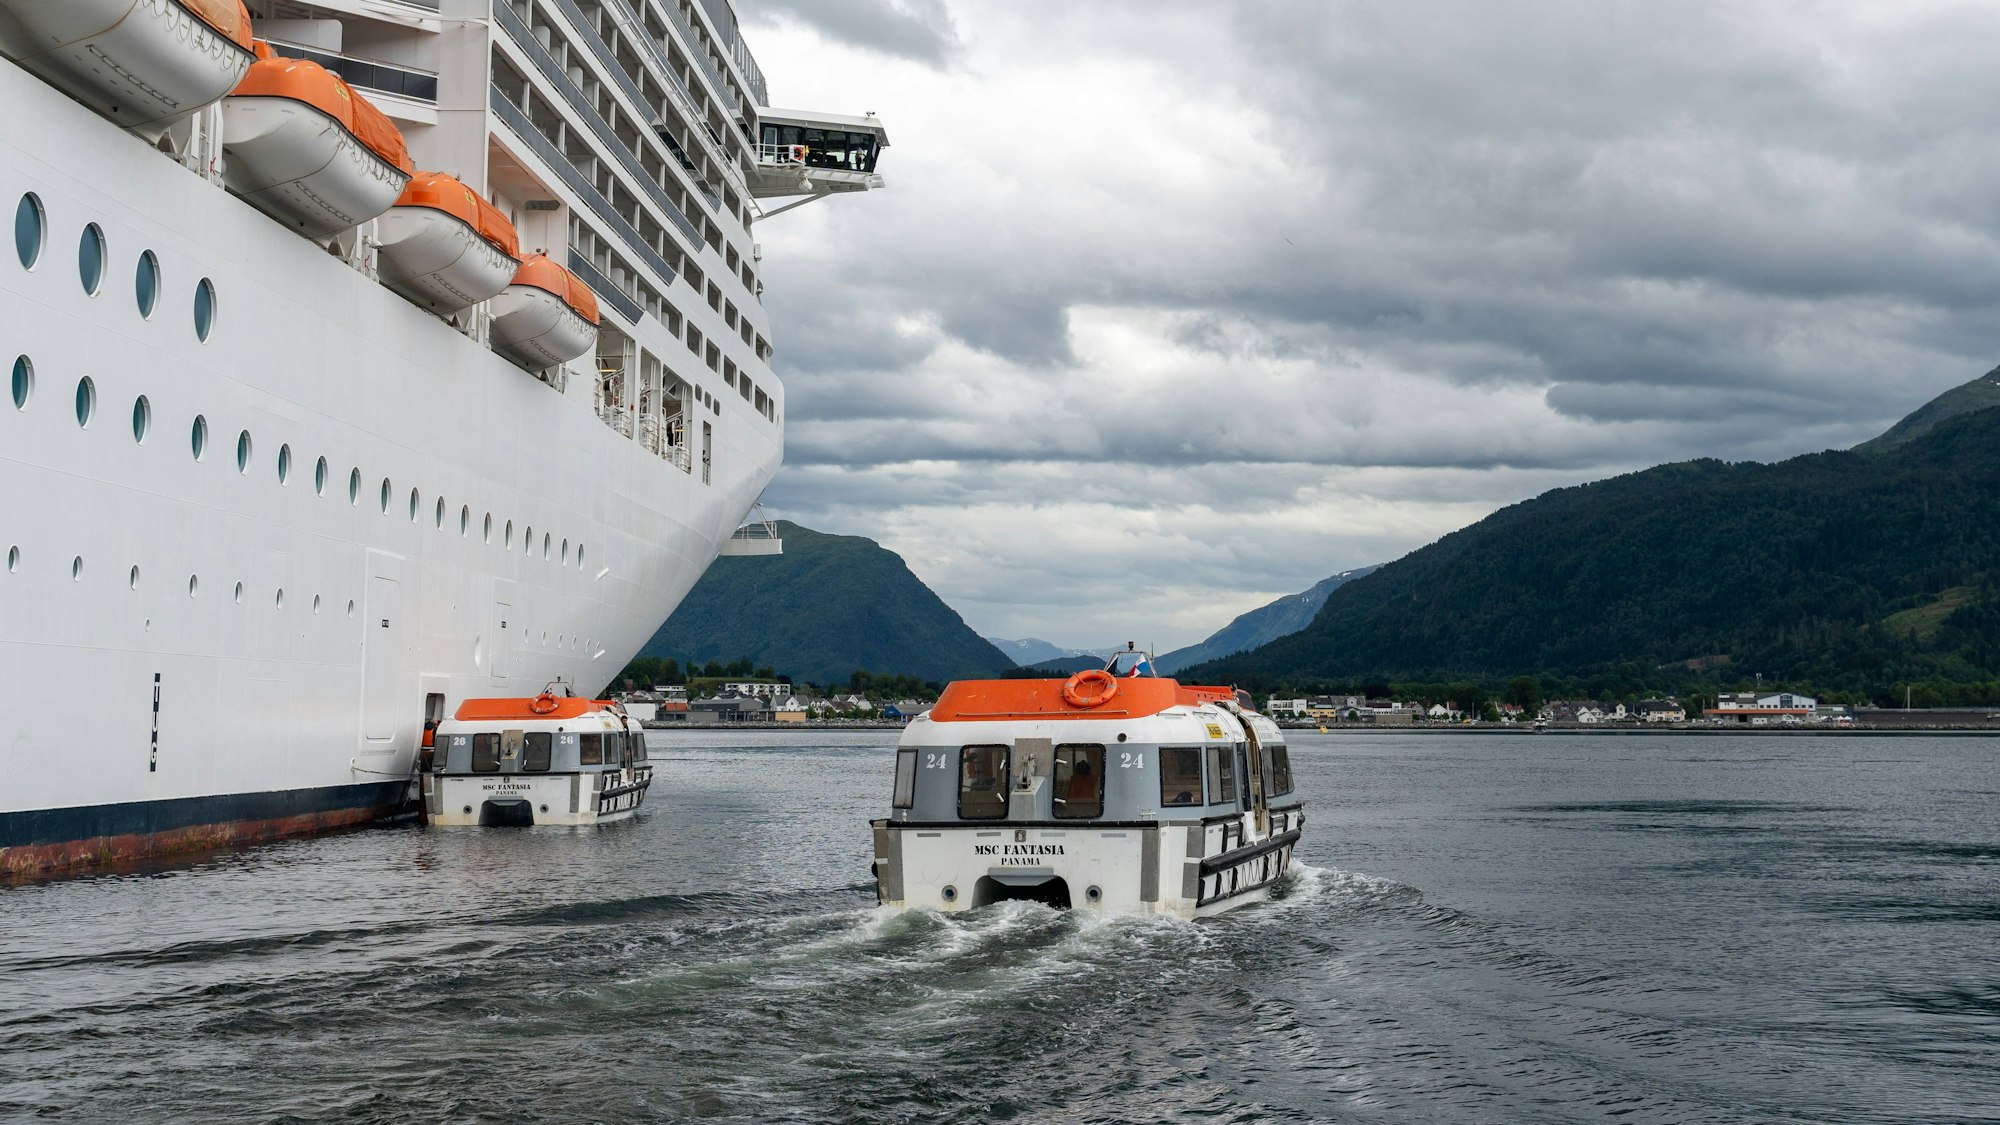 Tenderboot oder Rettungsboot als Fähre zwischen dem Kreuzfahrtschiff MSC Fantasia und Nordfjordeid in Norwegen.